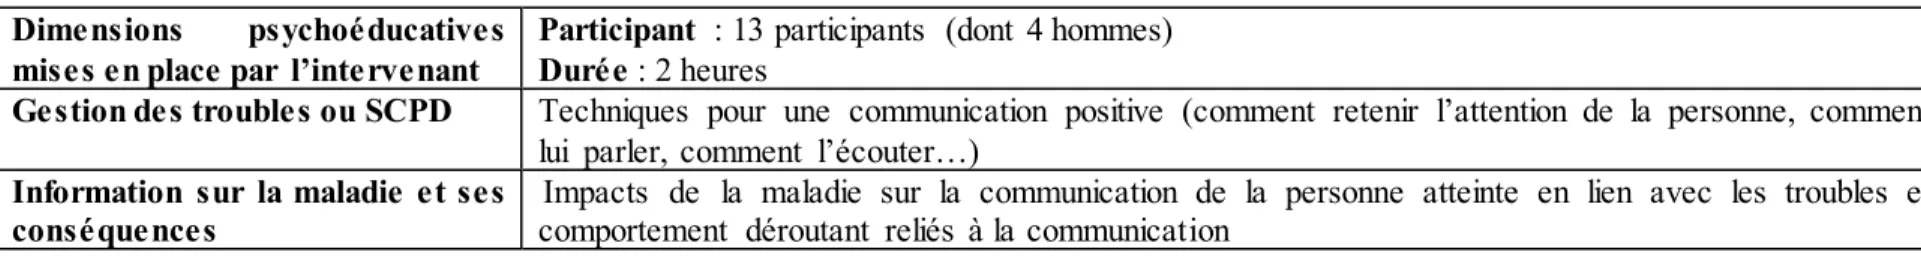 Tableau 7 : Analyse  du service « L’art de communiquer  avec le cœur »   Dimensions psychoéducatives 